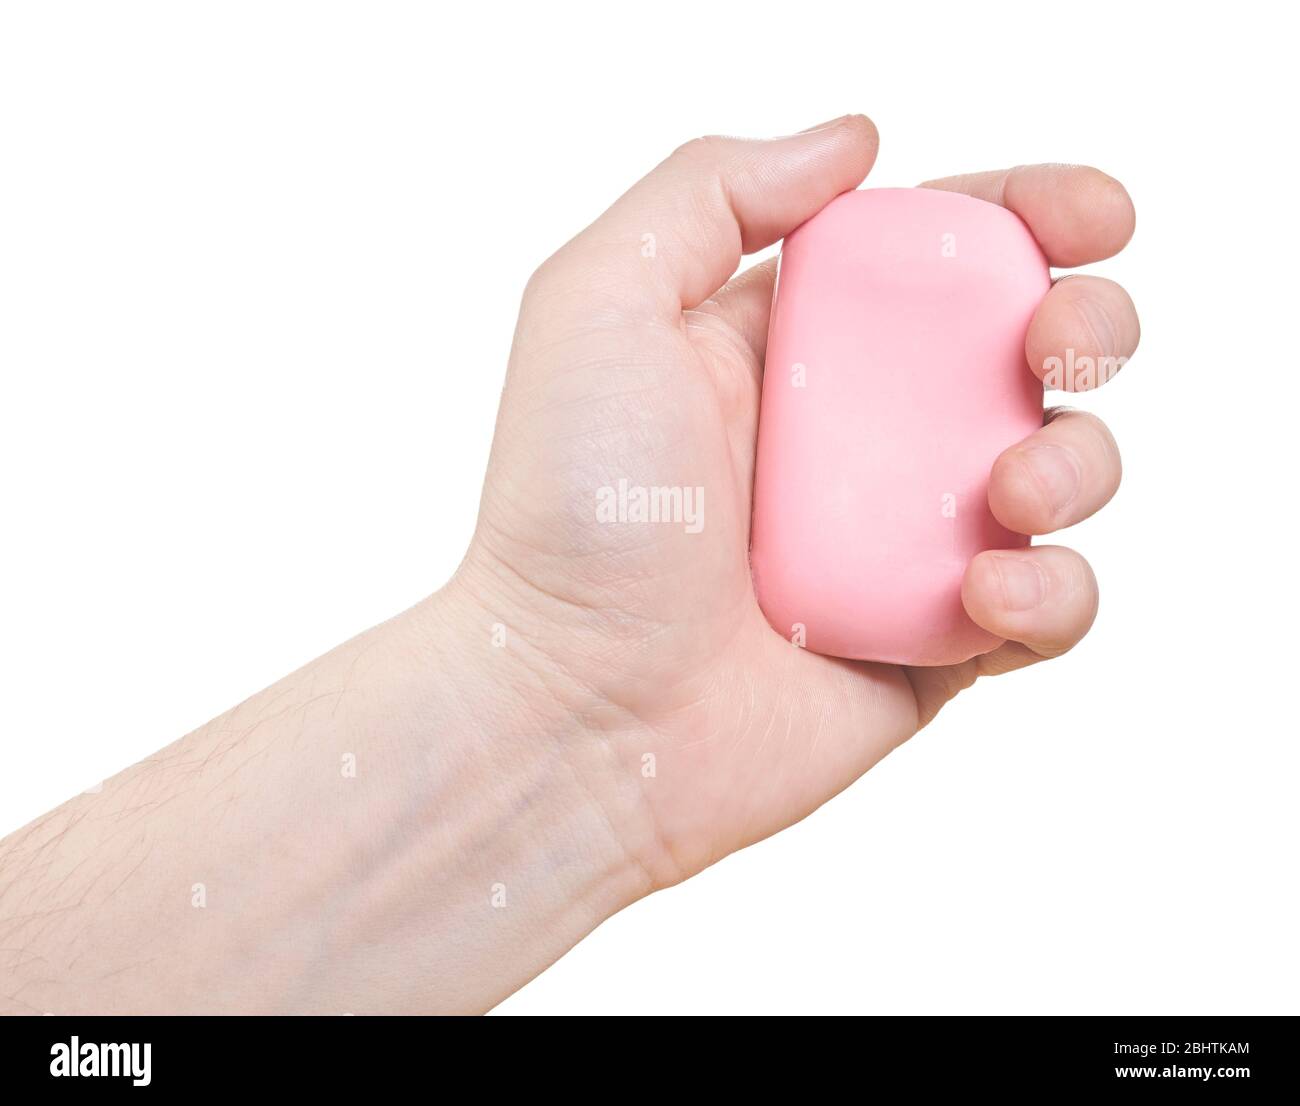 Un pezzo di sapone cremoso per le mani. Isolato su sfondo bianco. Foto Stock